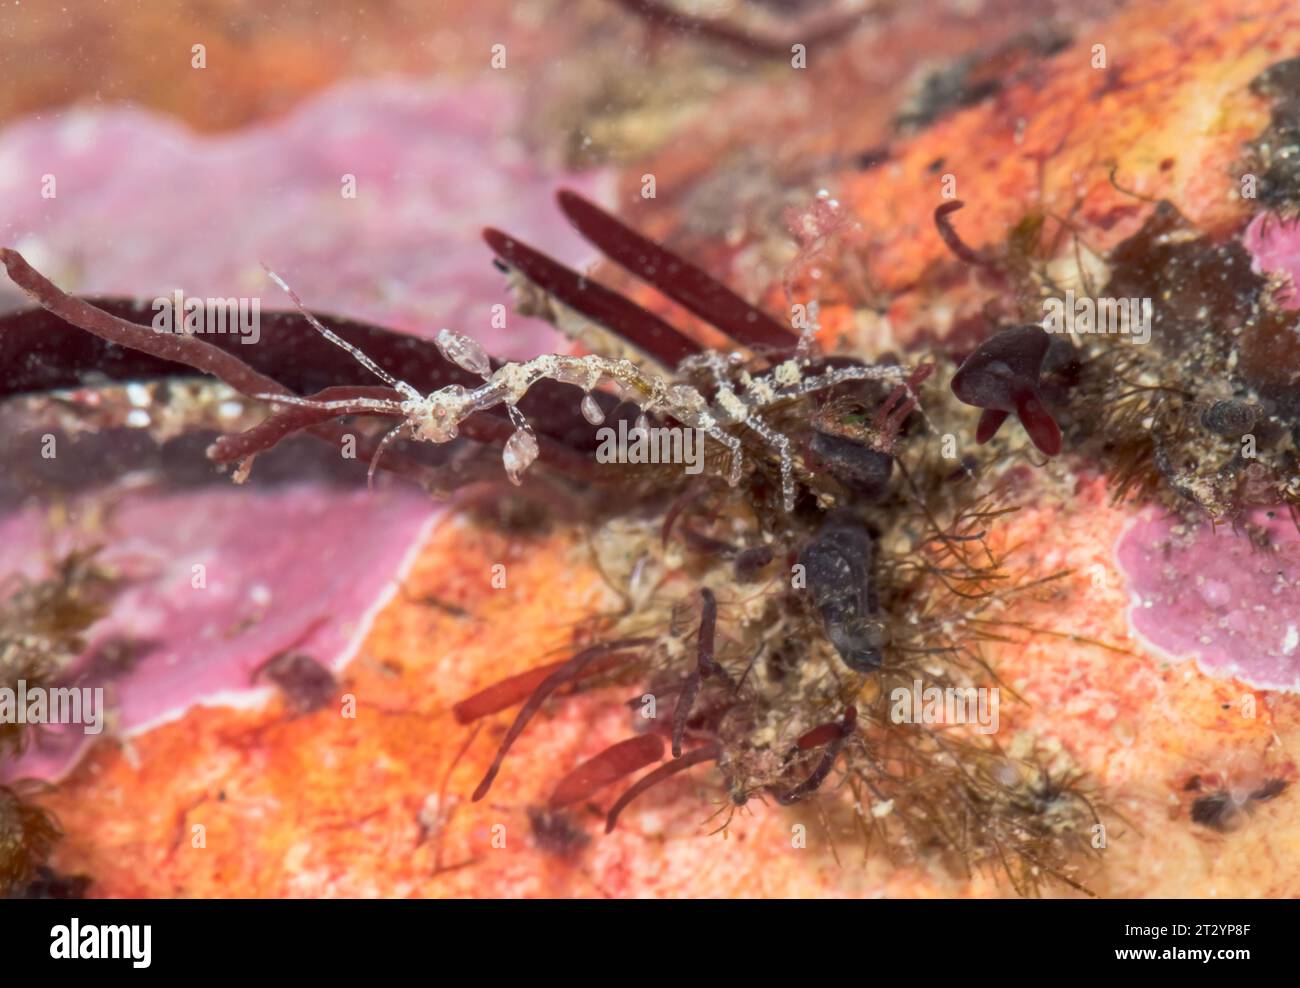 Skeleton Shrimp (Caprella cf acanthifera), Caprellidae, Malacostraca, Crustacean. Sussex, UK Stock Photo